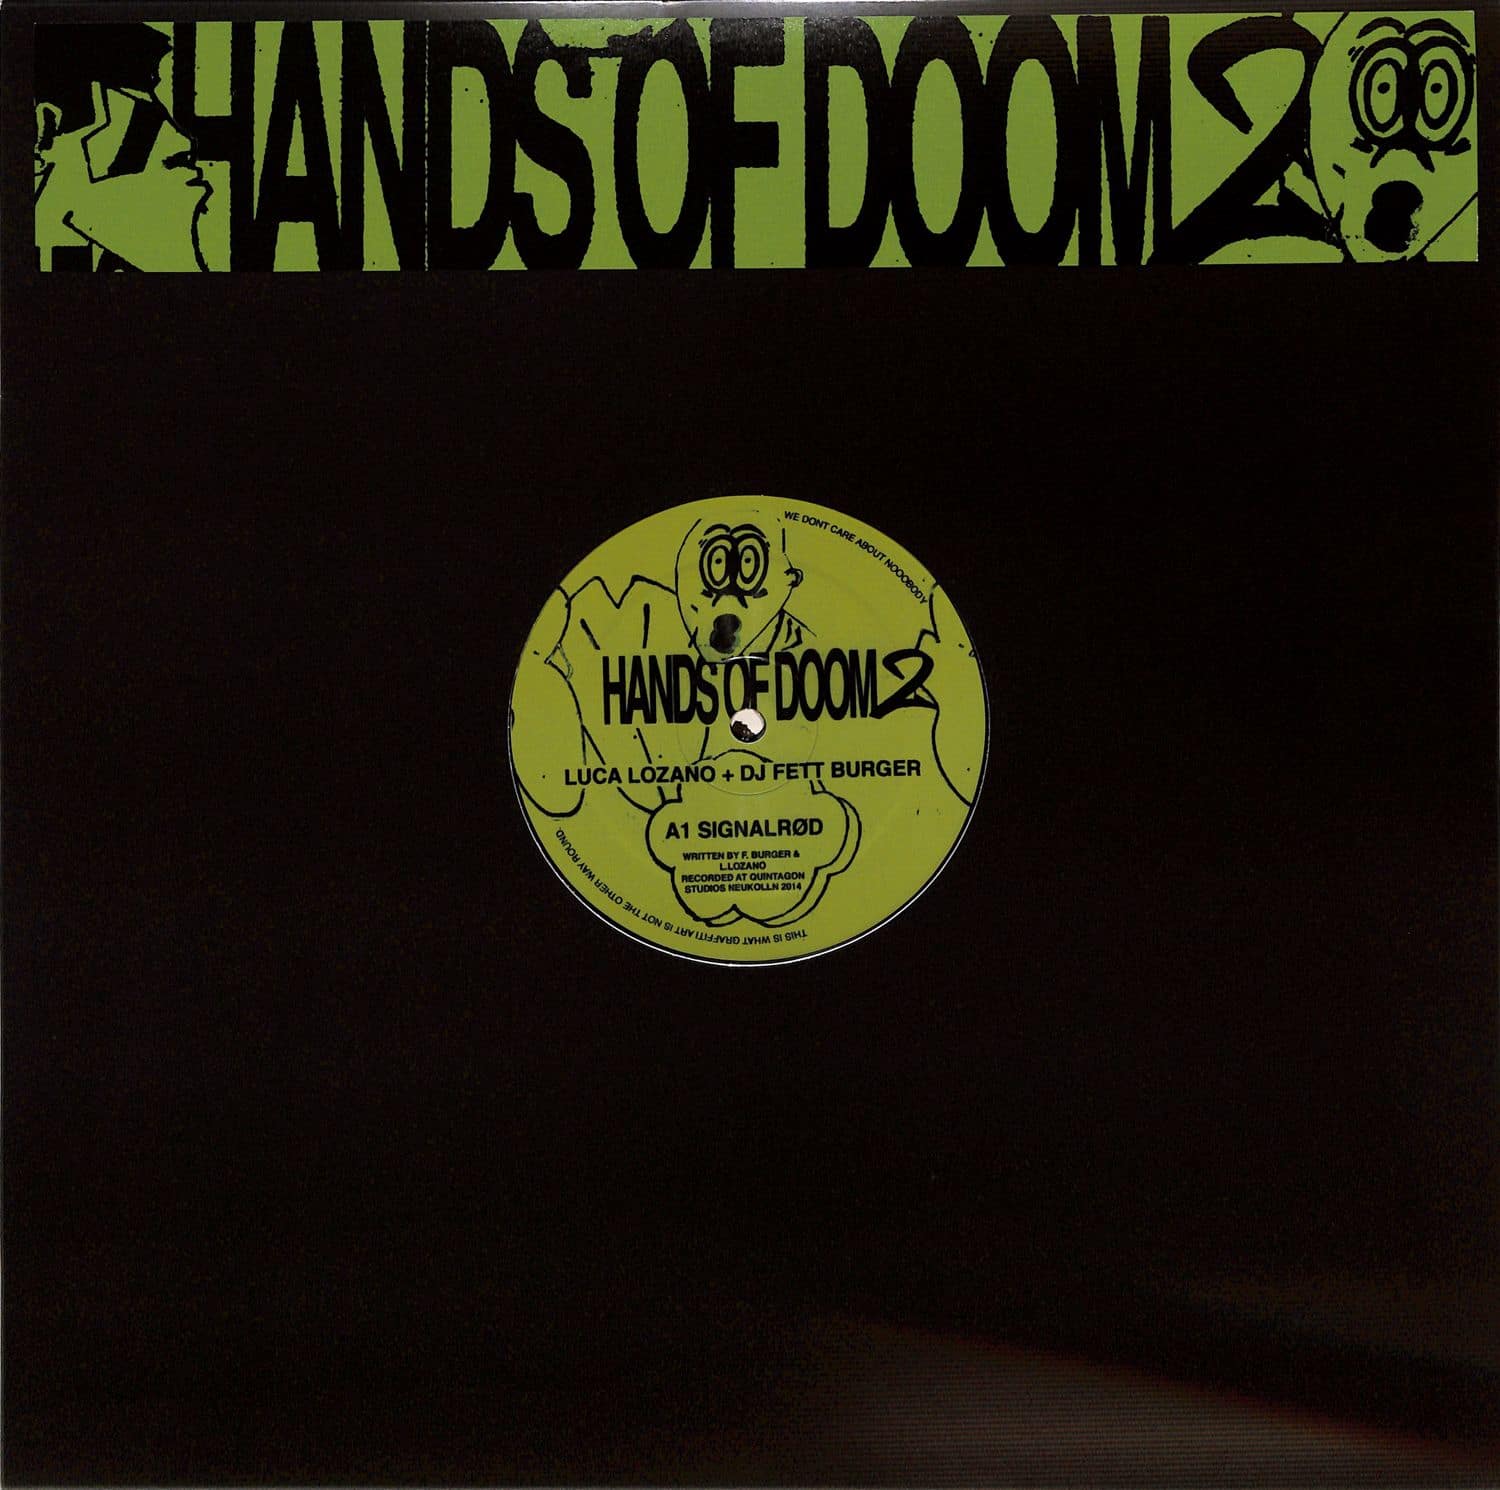 Luca Lozano + DJ Fett Burger - HANDS OF DOOM 2 EP 